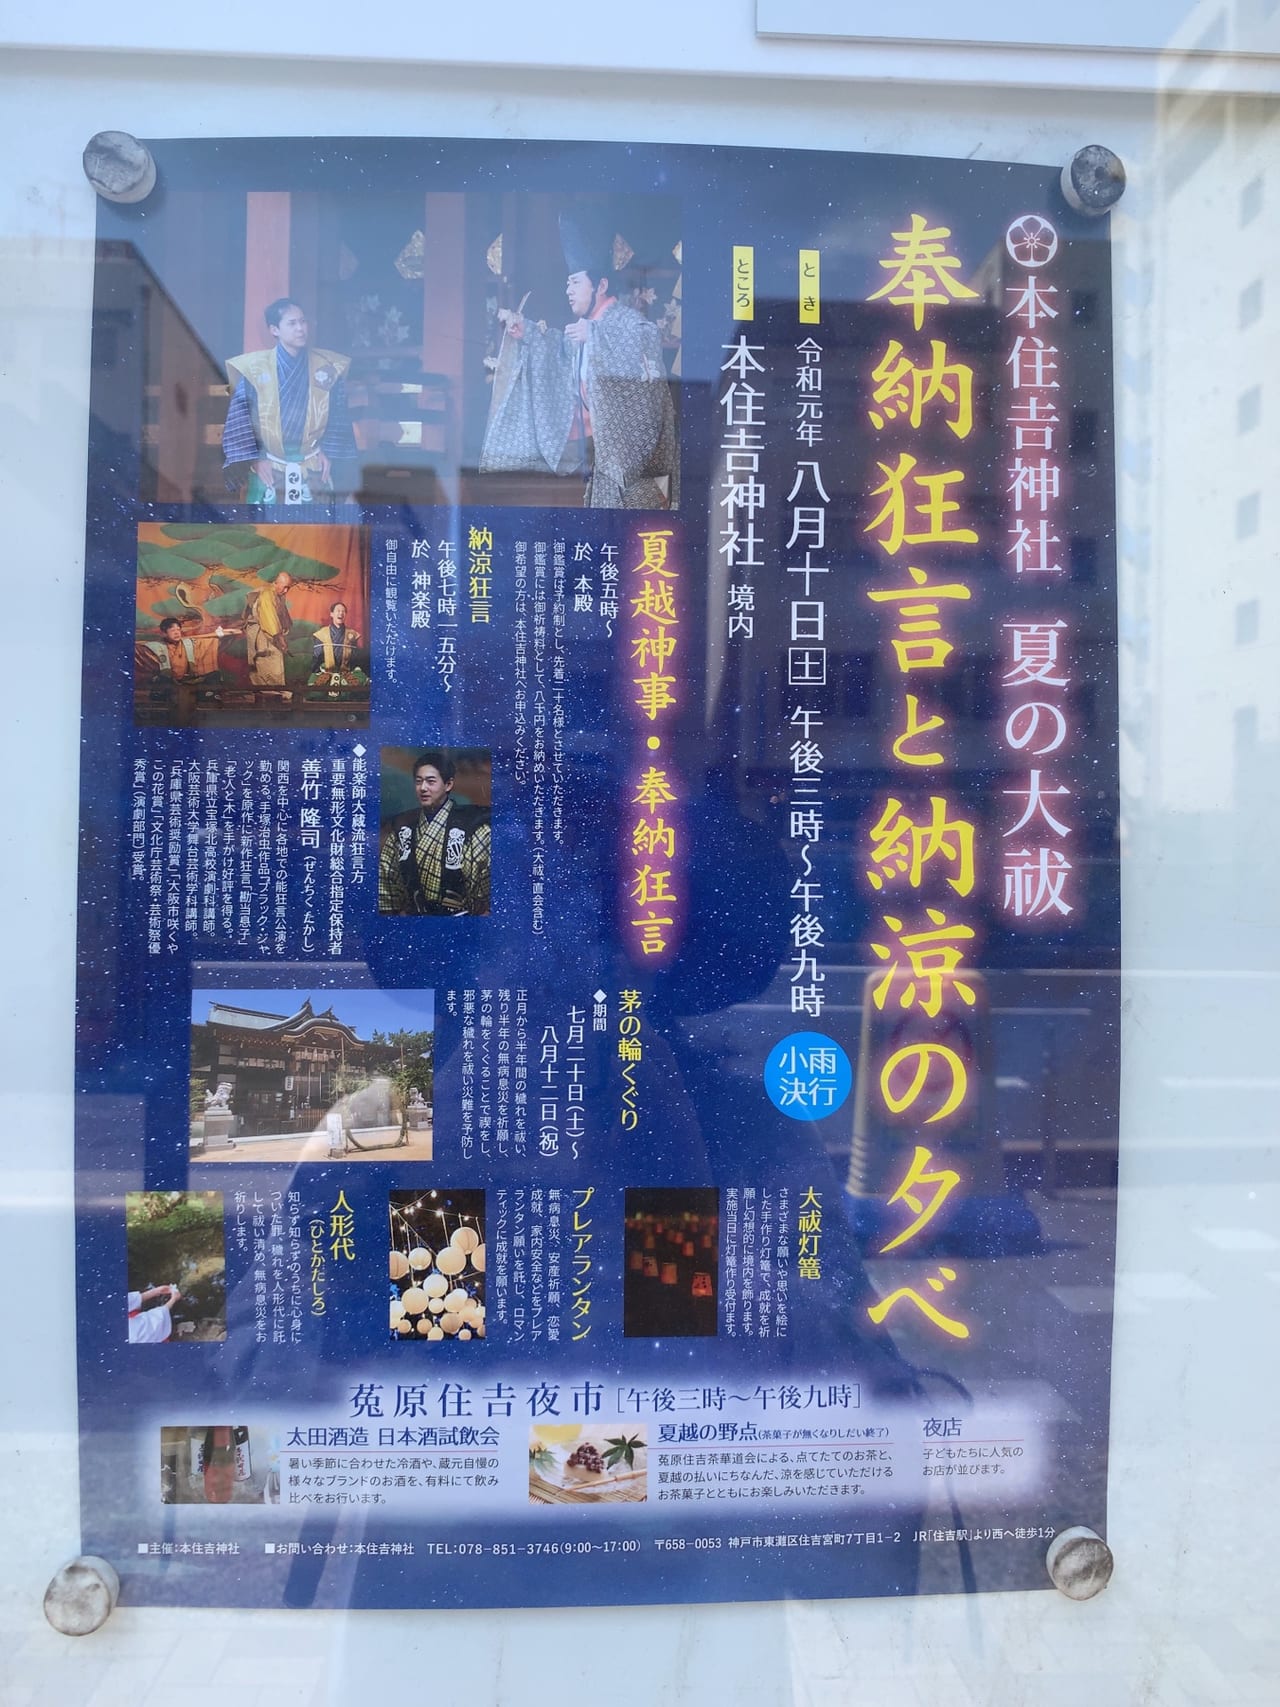 東灘区 世界無形遺産 狂言の舞を見たことはありますか 8月10日本住吉神社で無料閲覧できます 号外net 神戸市灘区 東灘区